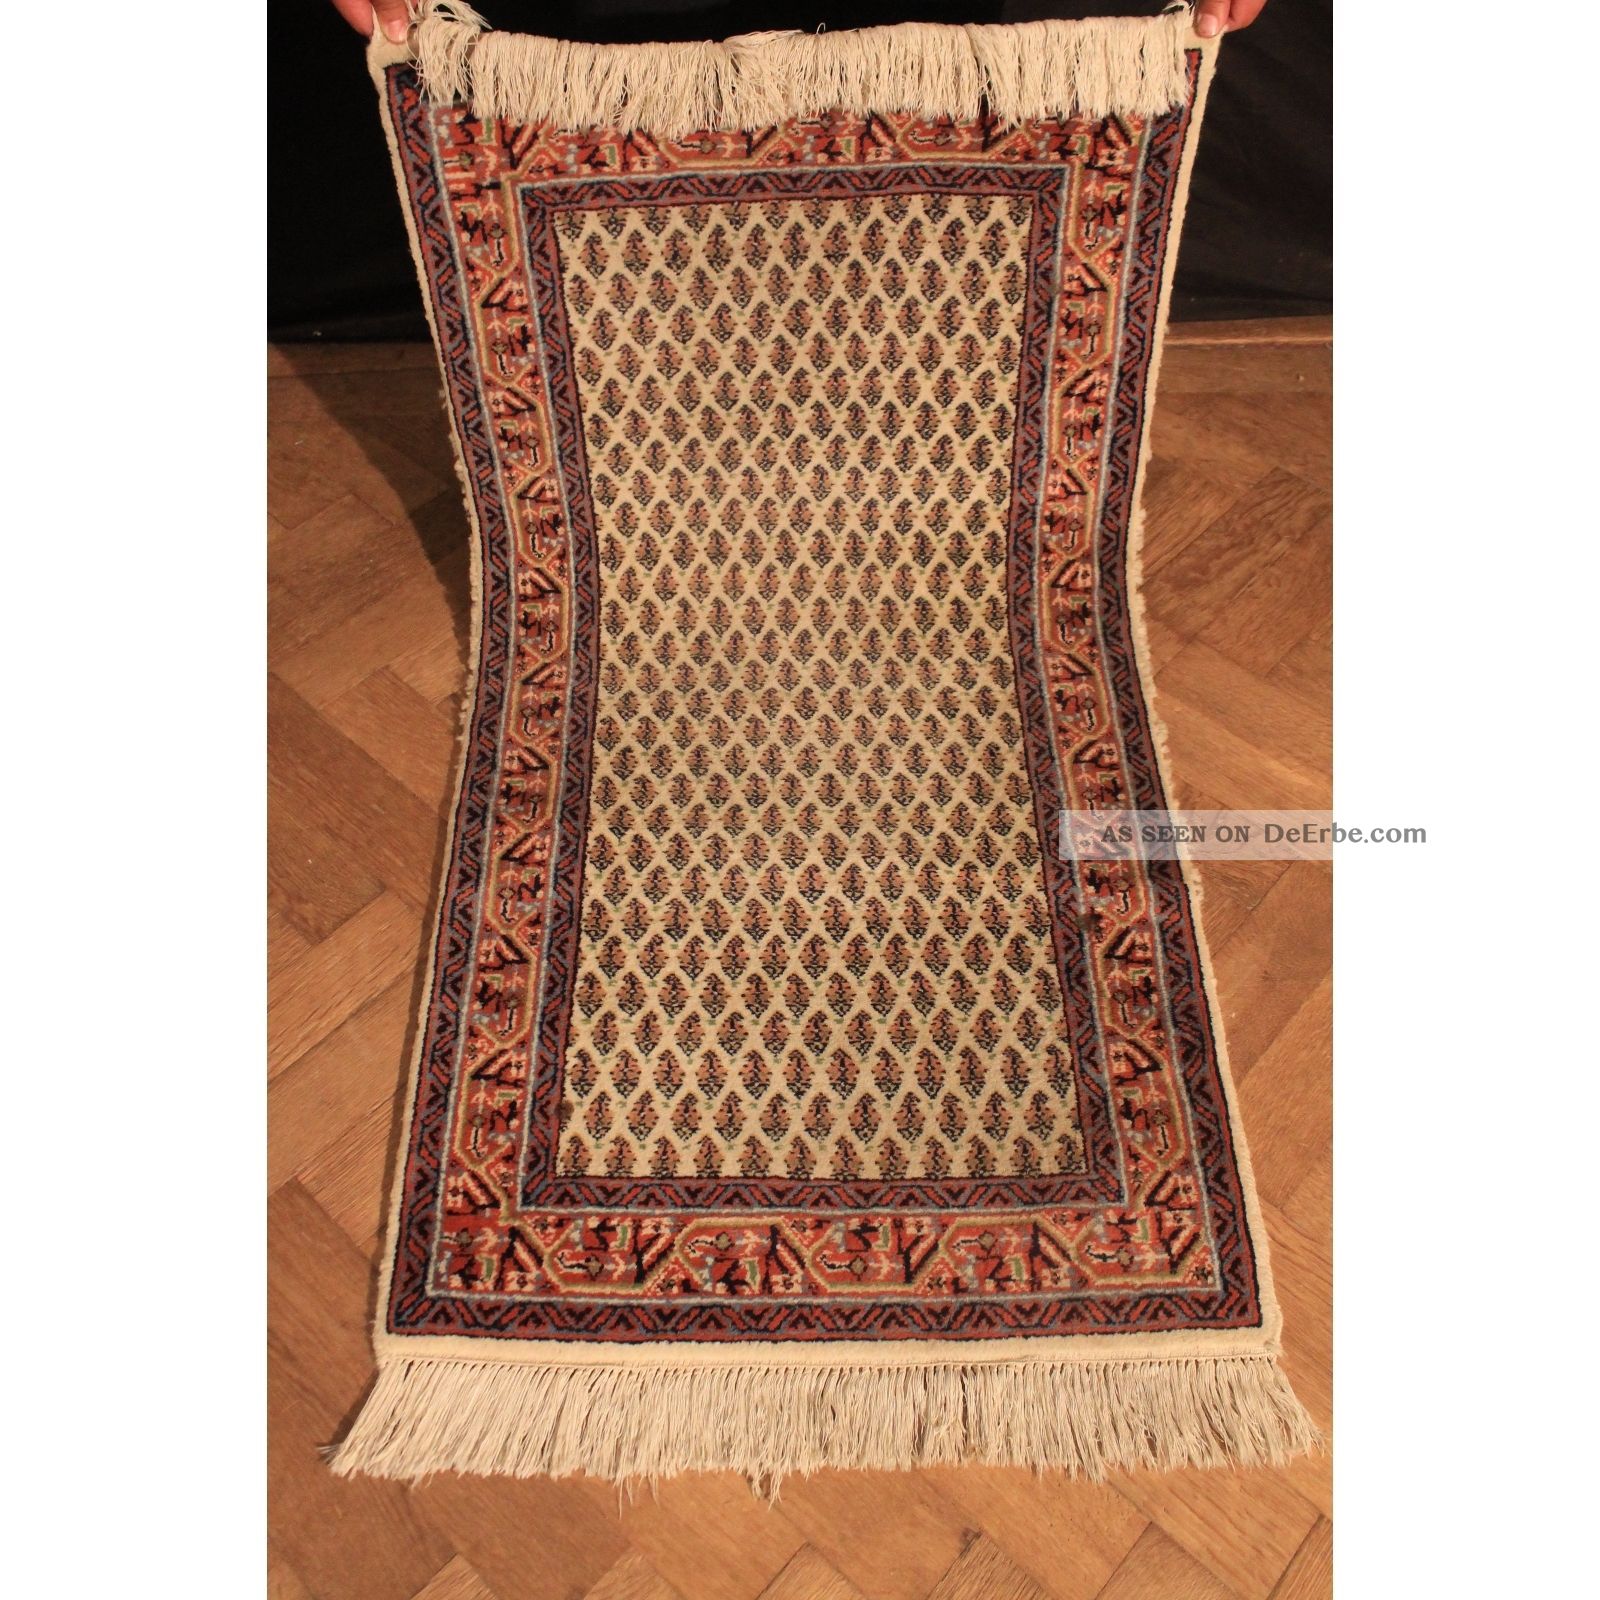 Schöner Handgeknüpfter Orient Palast Teppich Blumen Mir Carpet Old Rug 70x140cm Teppiche & Flachgewebe Bild